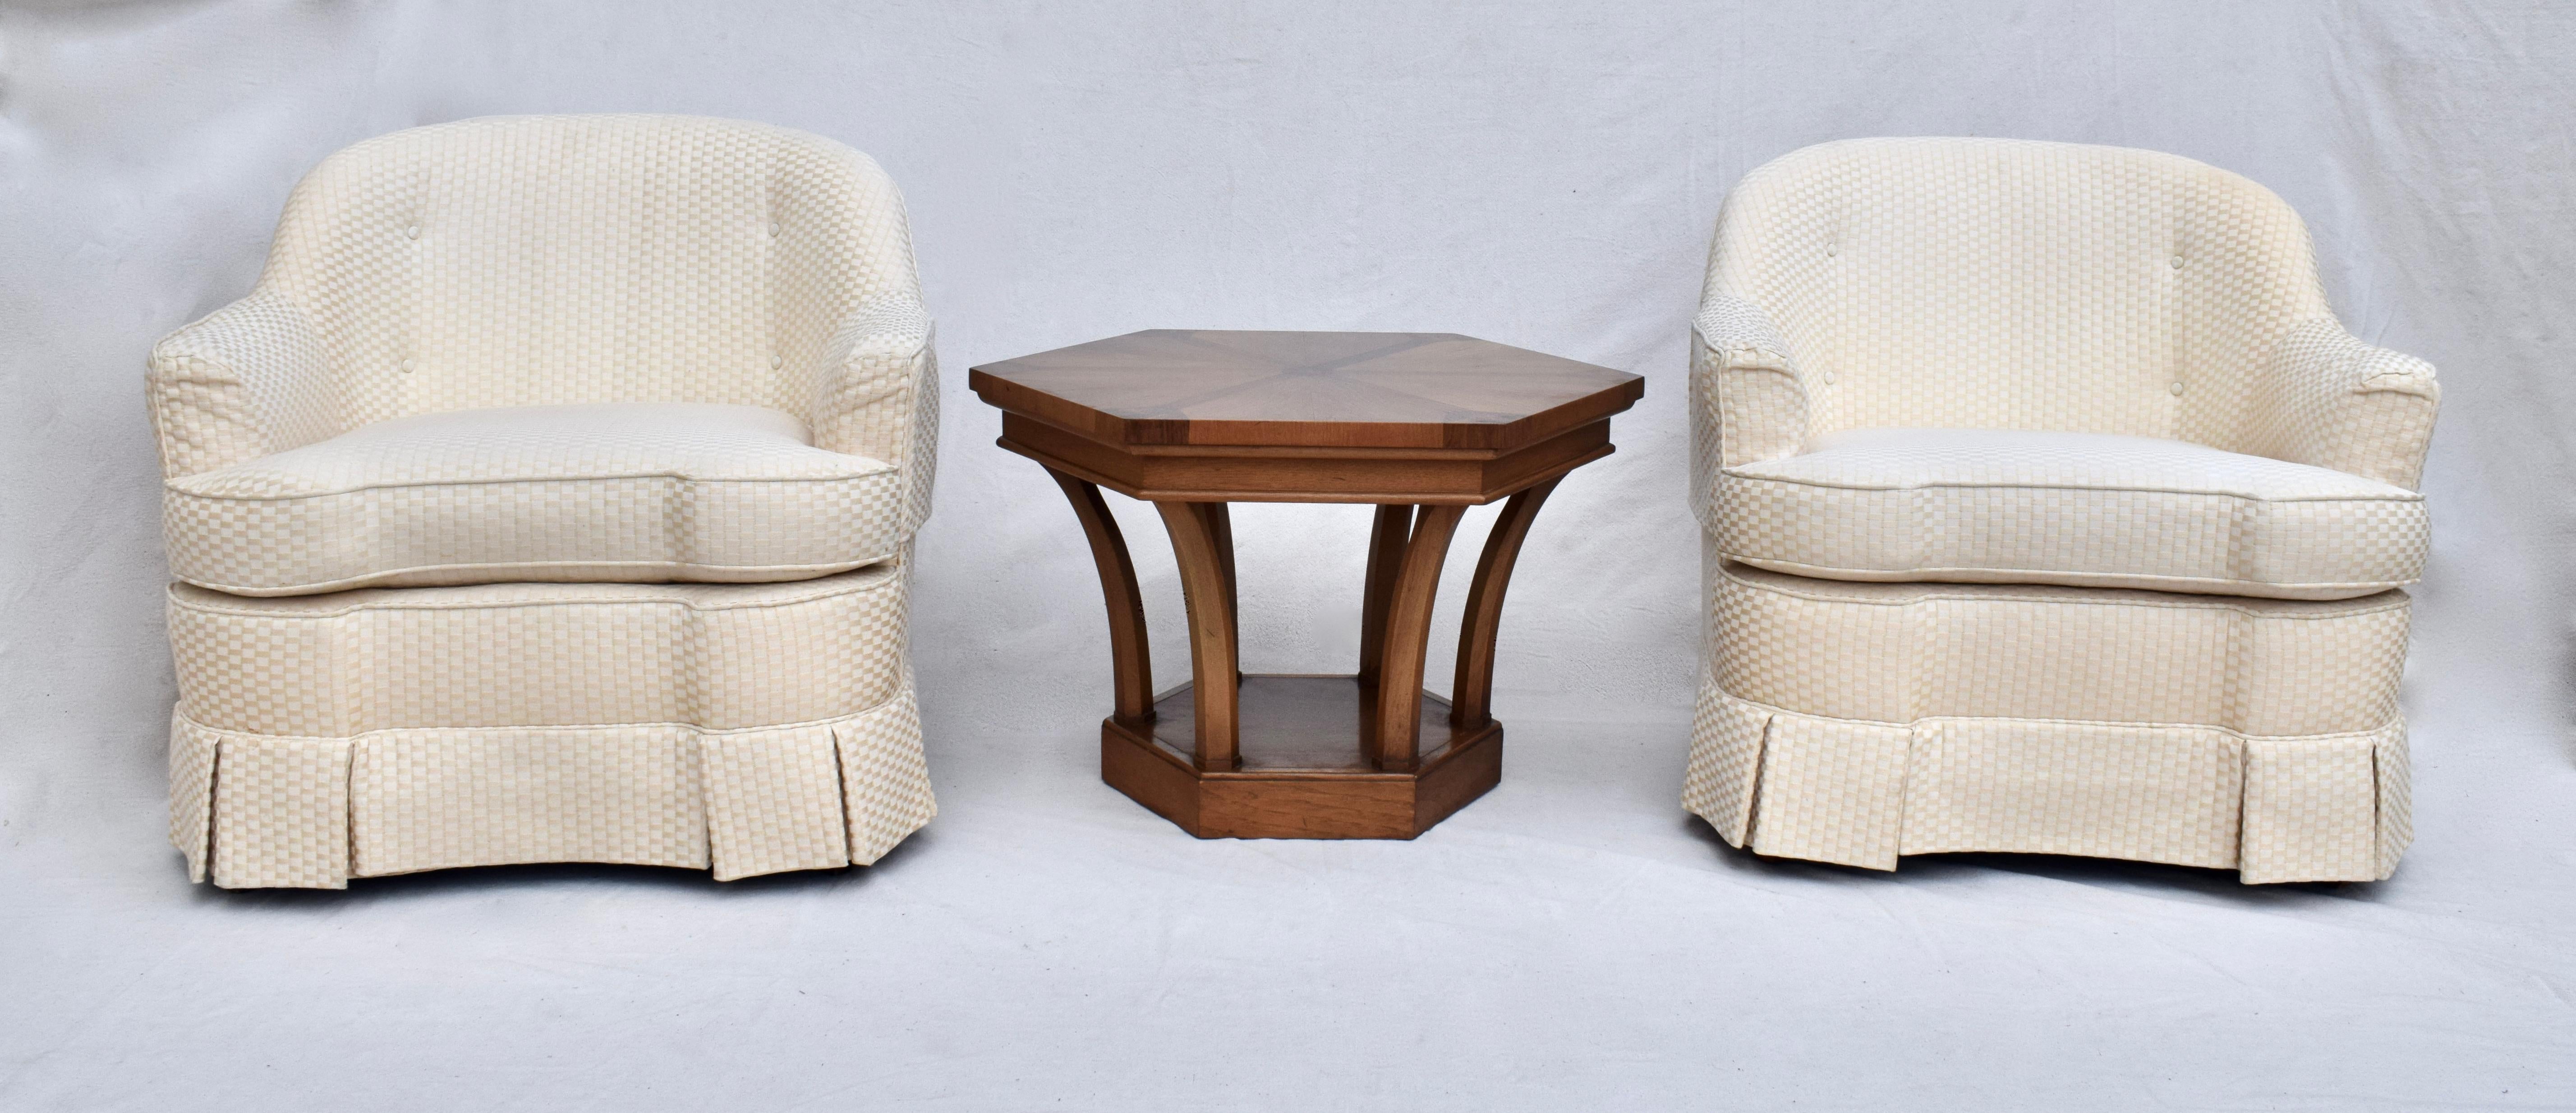 Ein 1960er Beistell- oder Beistelltisch von Tomlinson Furniture aus feurigen Pecan- und Mahagoni-Intarsienhölzern in der Form eines Hexagons. Ein ungewöhnliches Design, das sich für eine Vielzahl von Anwendungen eignet.